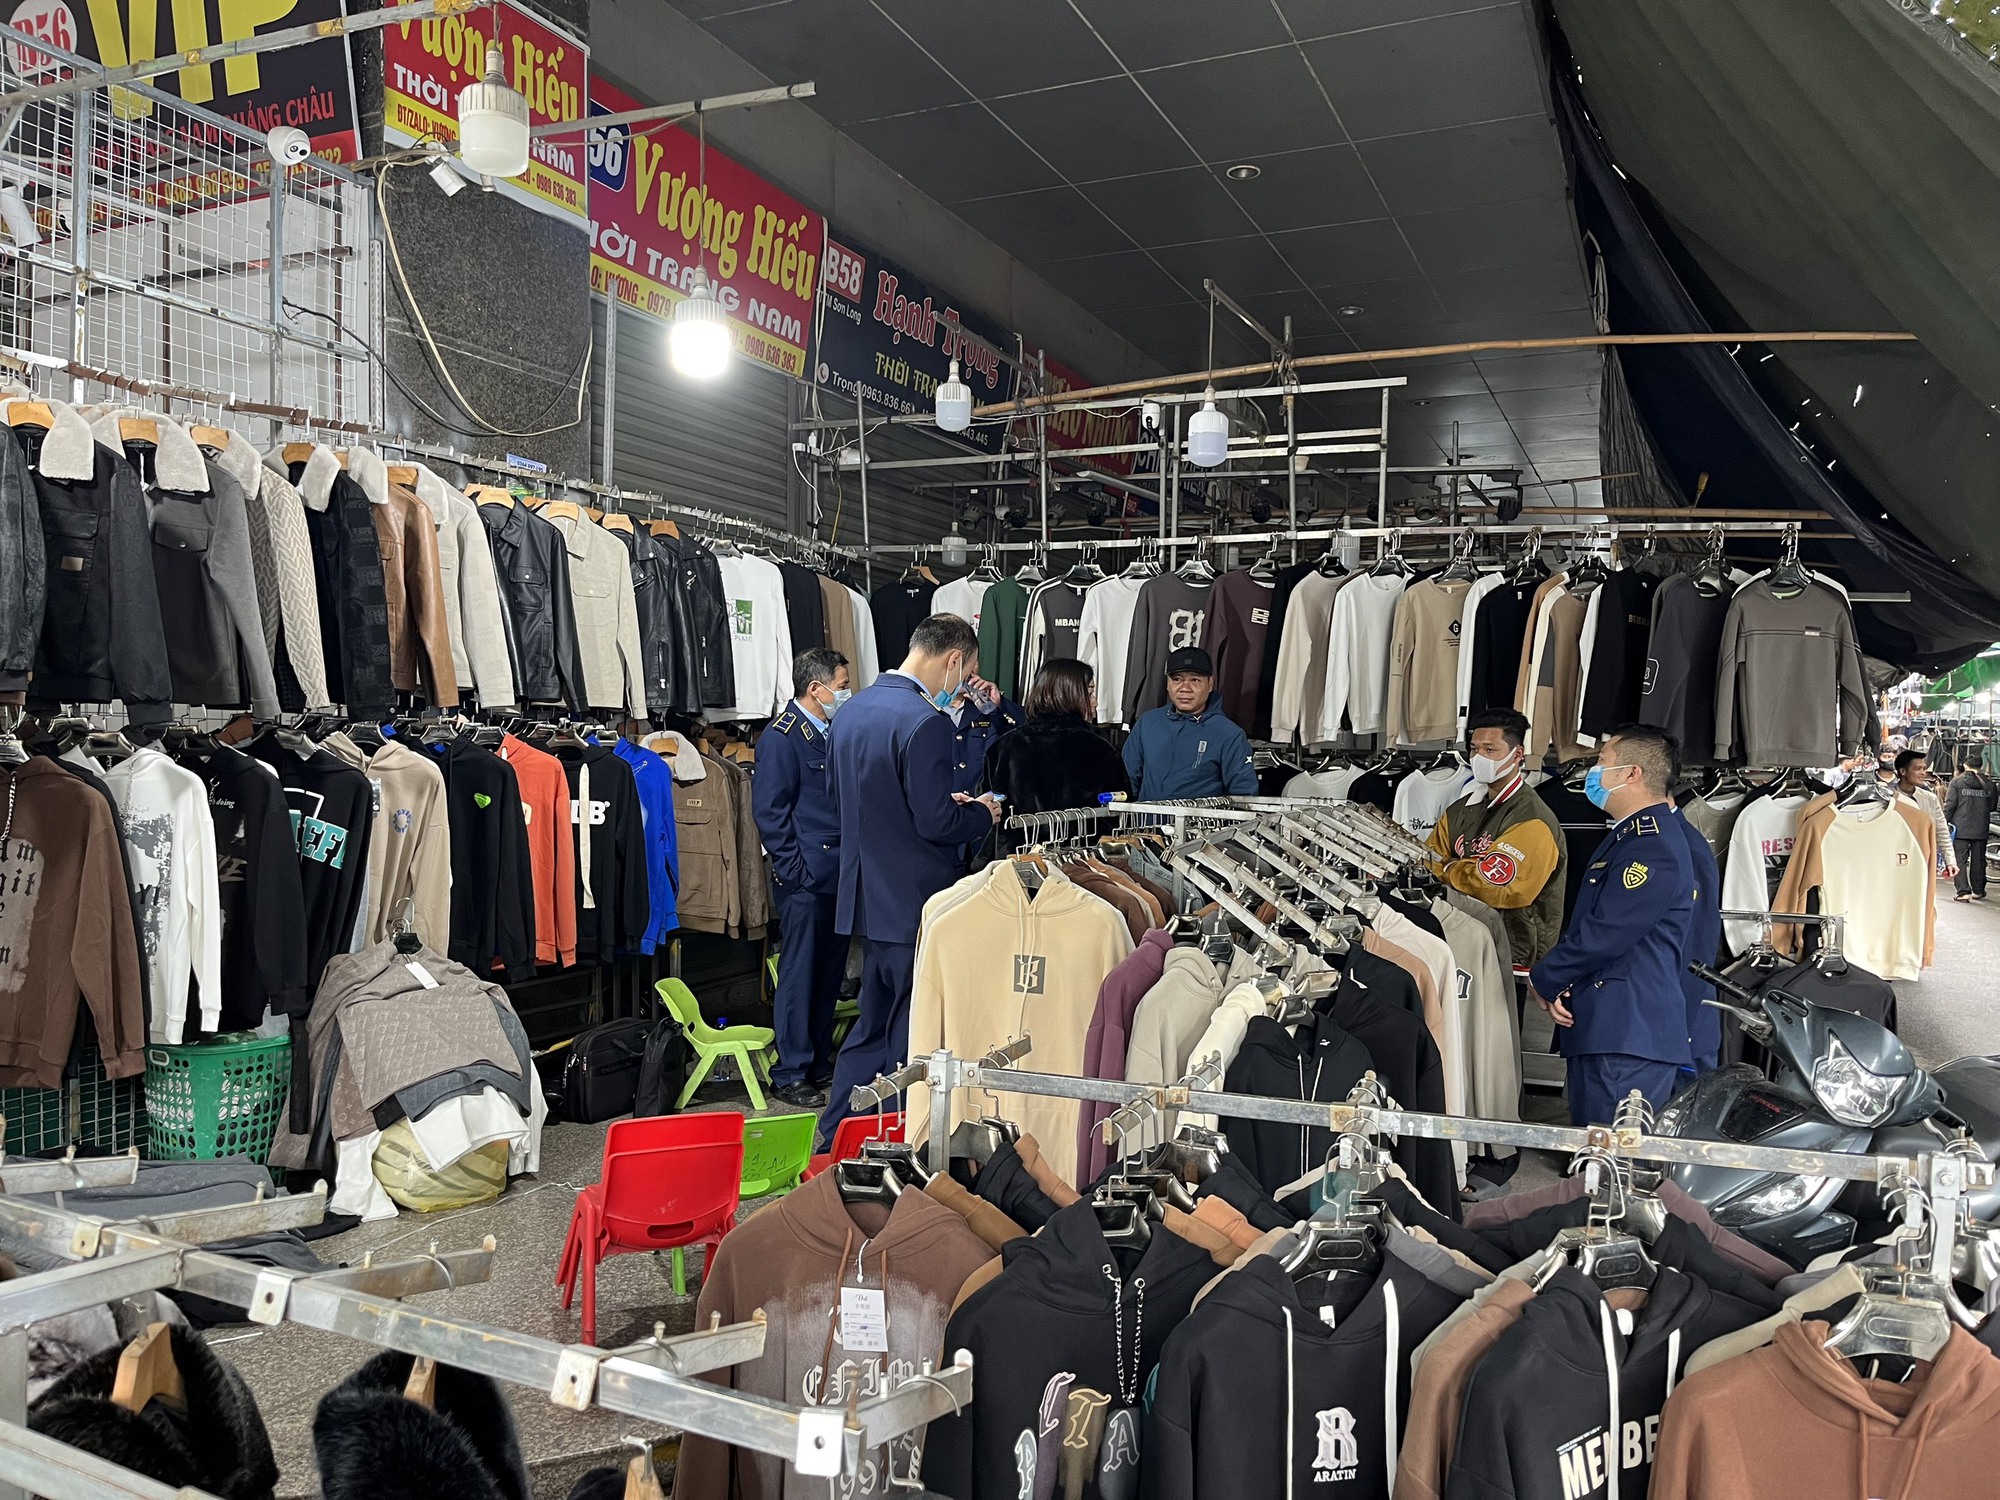 Quản lý thị trường mạnh tay truy quét hàng nhái tại chợ Ninh Hiệp - Ảnh 2.